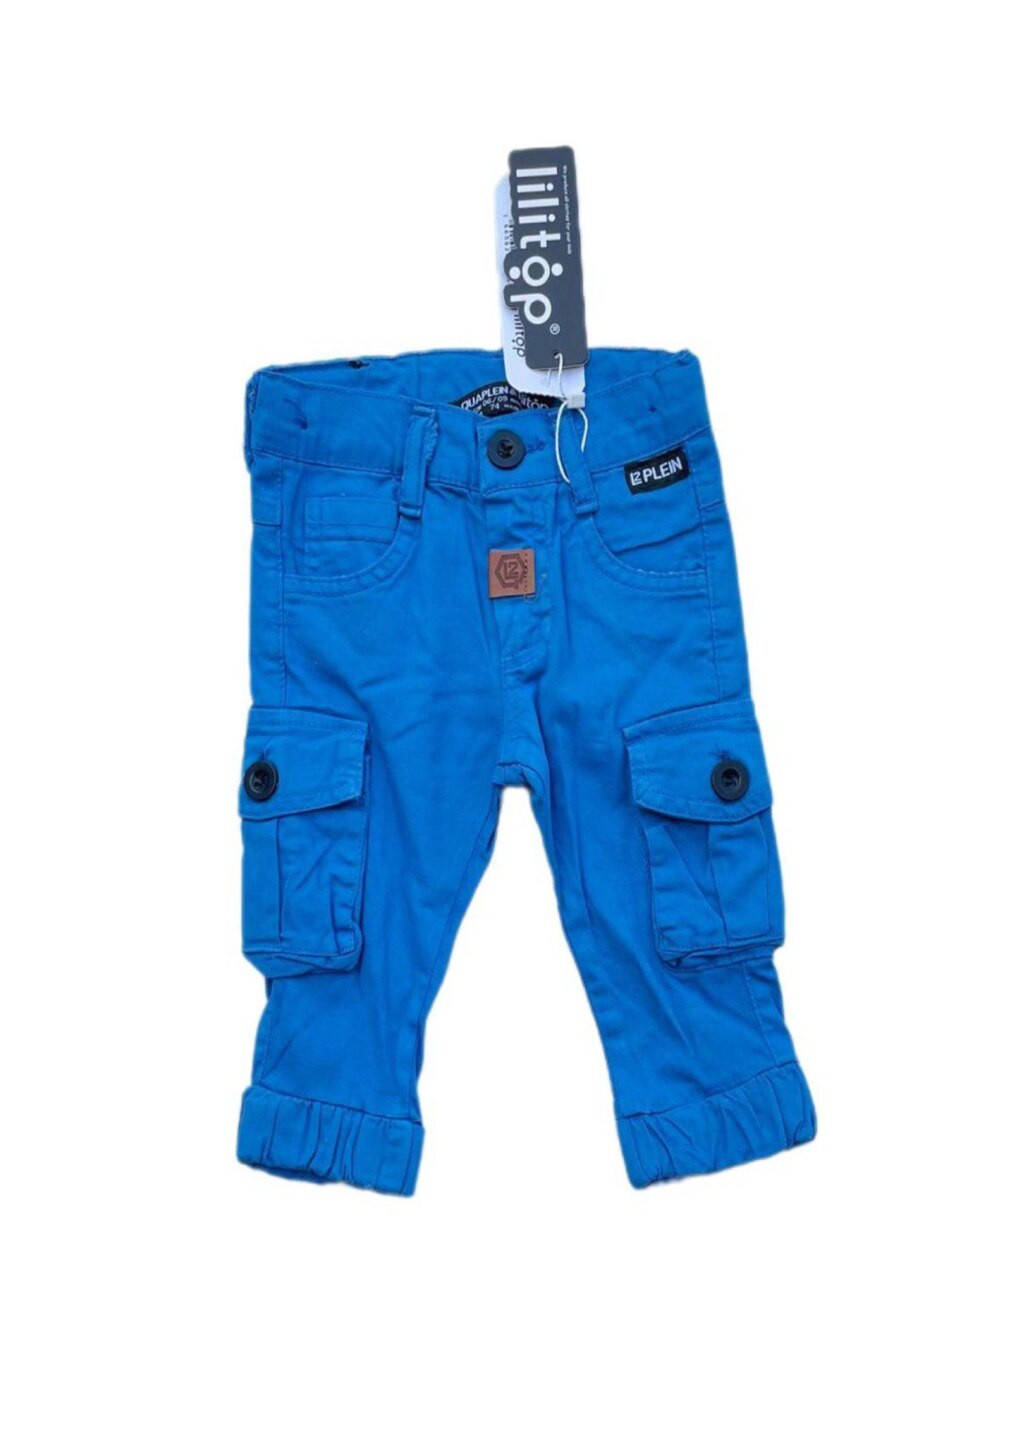 Голубые демисезонные джинсы джогеры в голубом цвете для мальчика. Lilitop